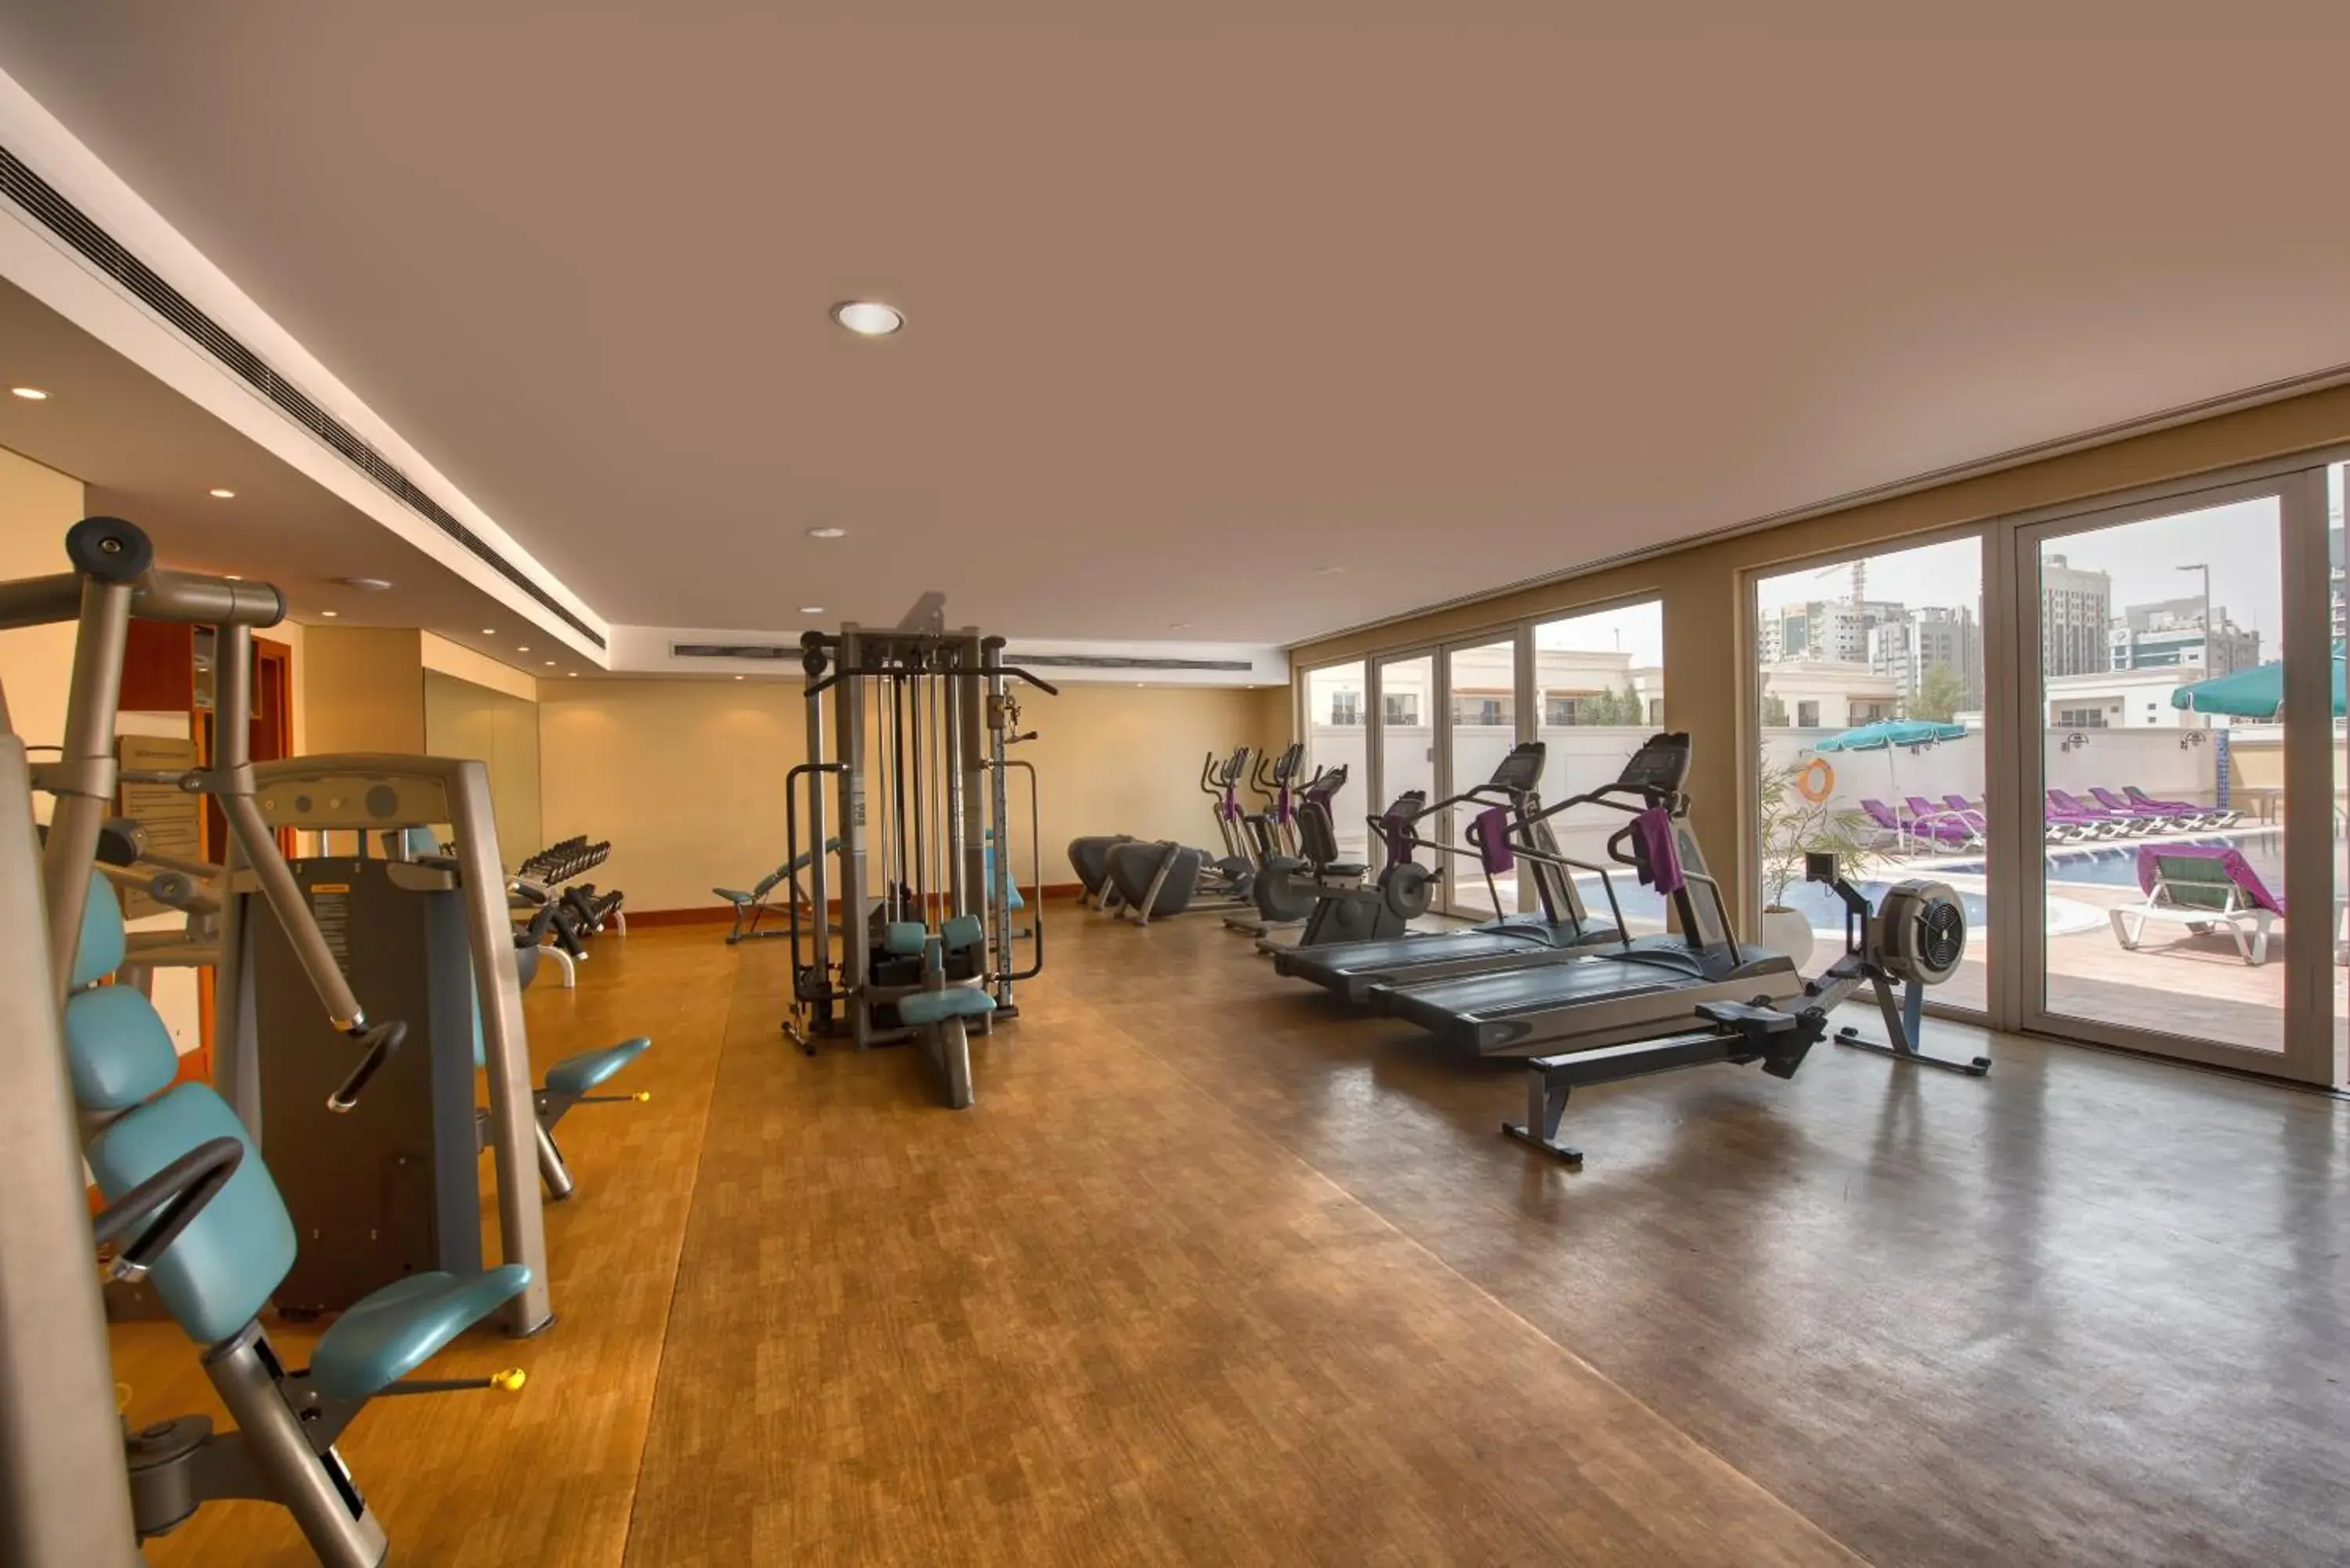 Fitness centre/facilities, Fitness Center/Facilities in J5 Villas Holiday Homes Barsha Gardens